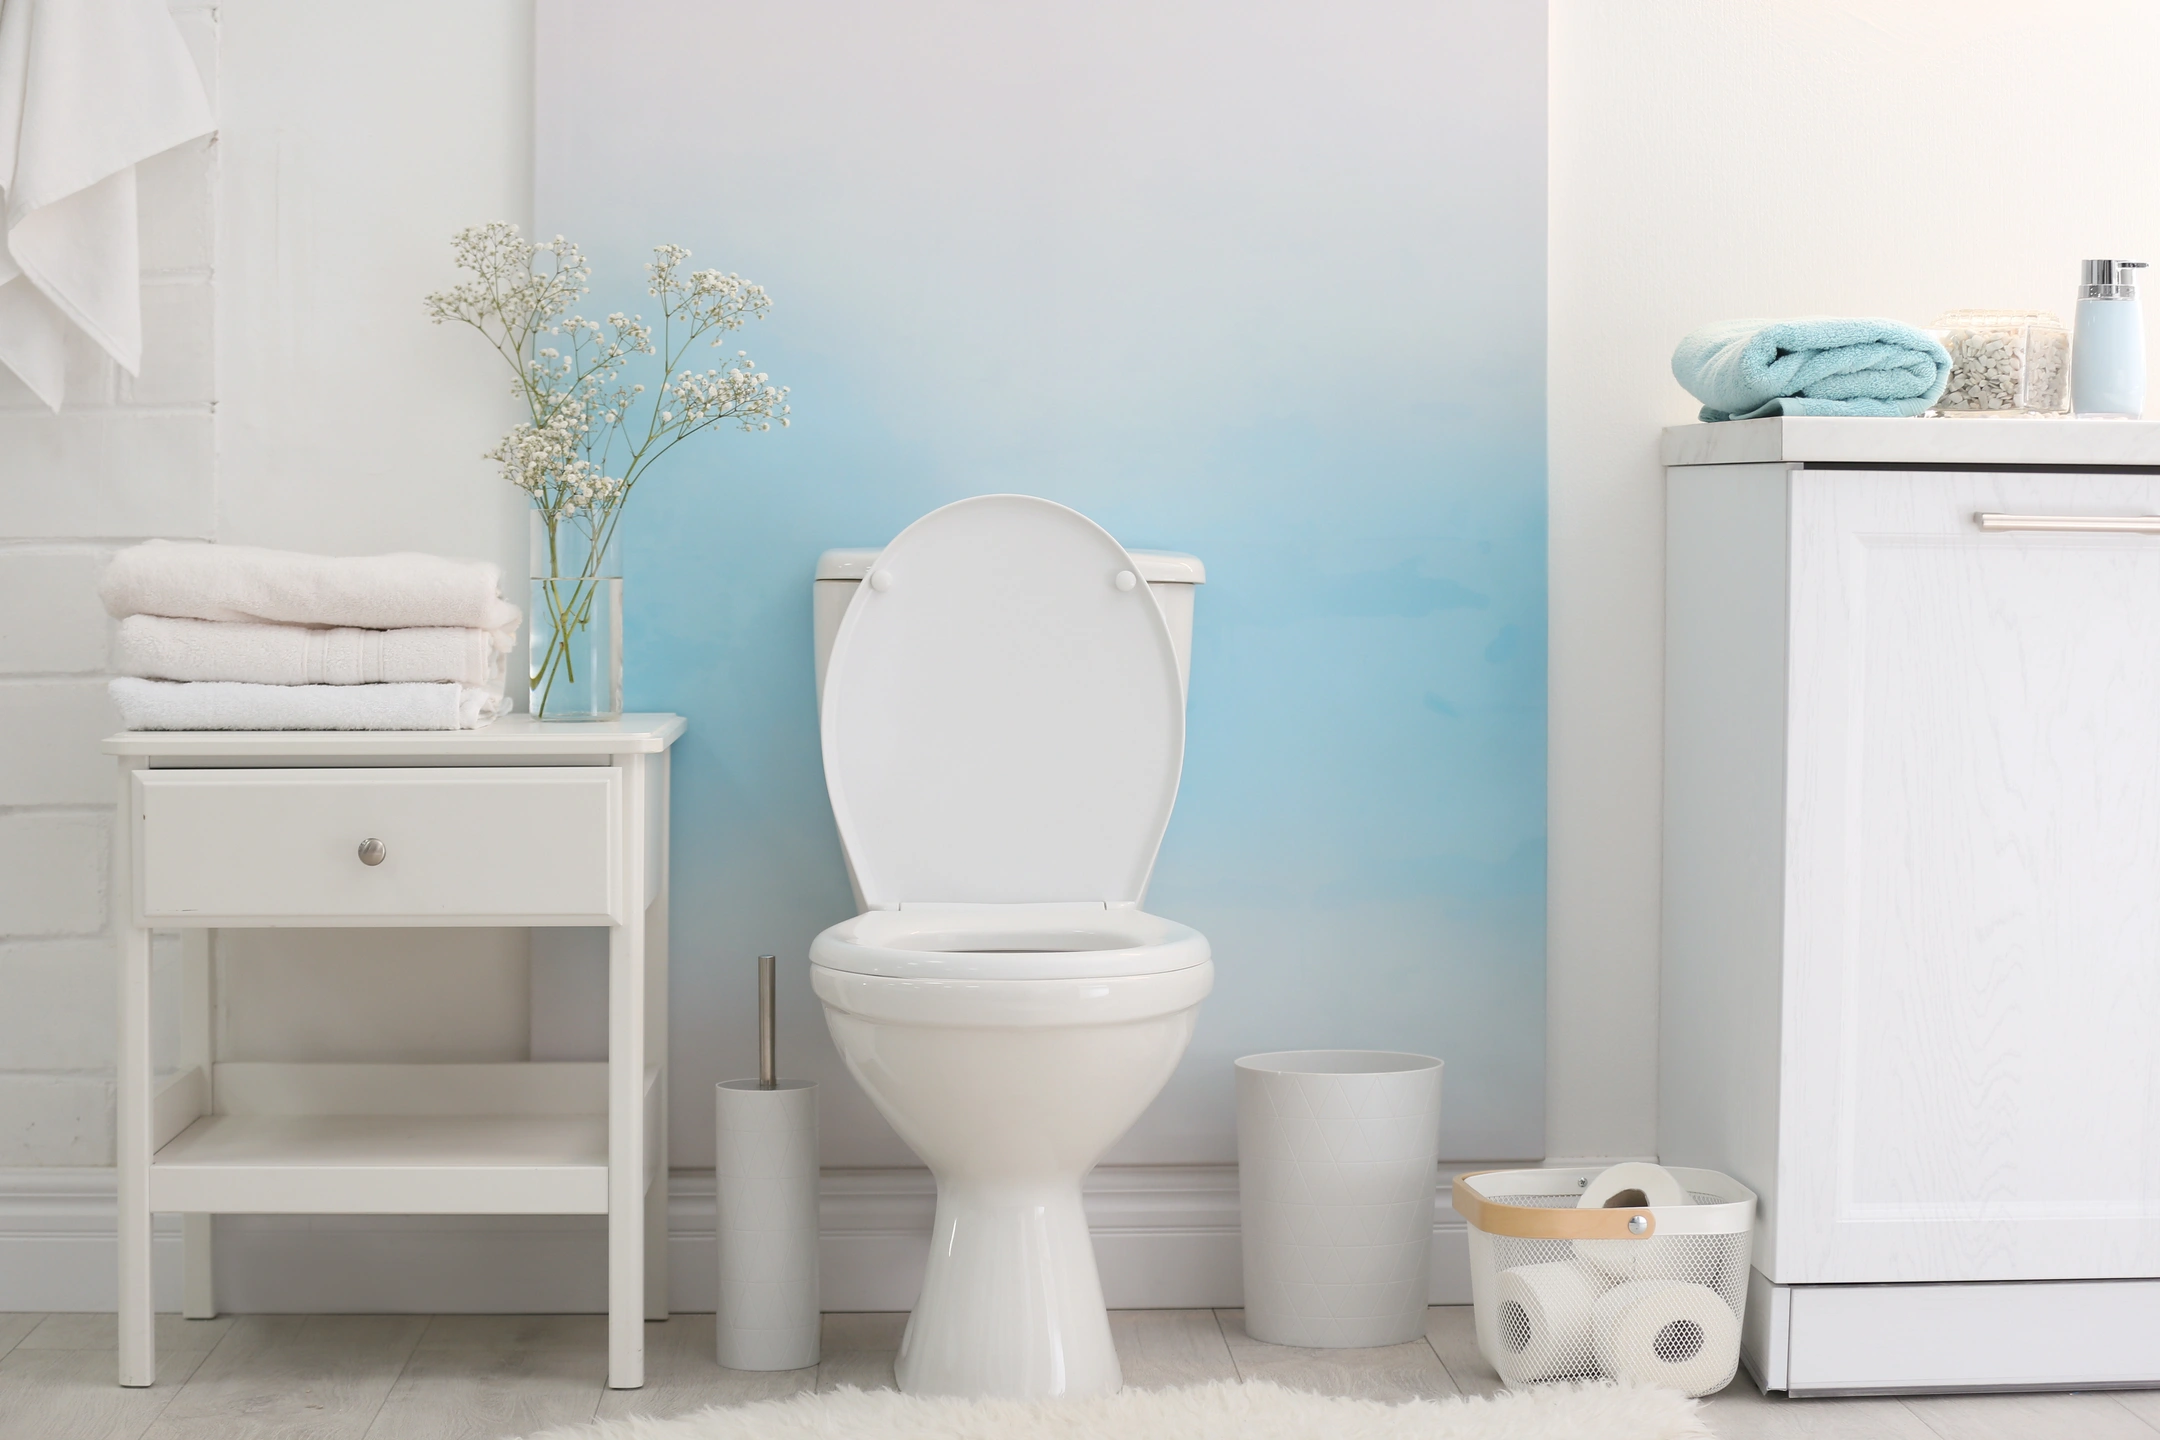 kohler ceramic toilets installed in white bathroom